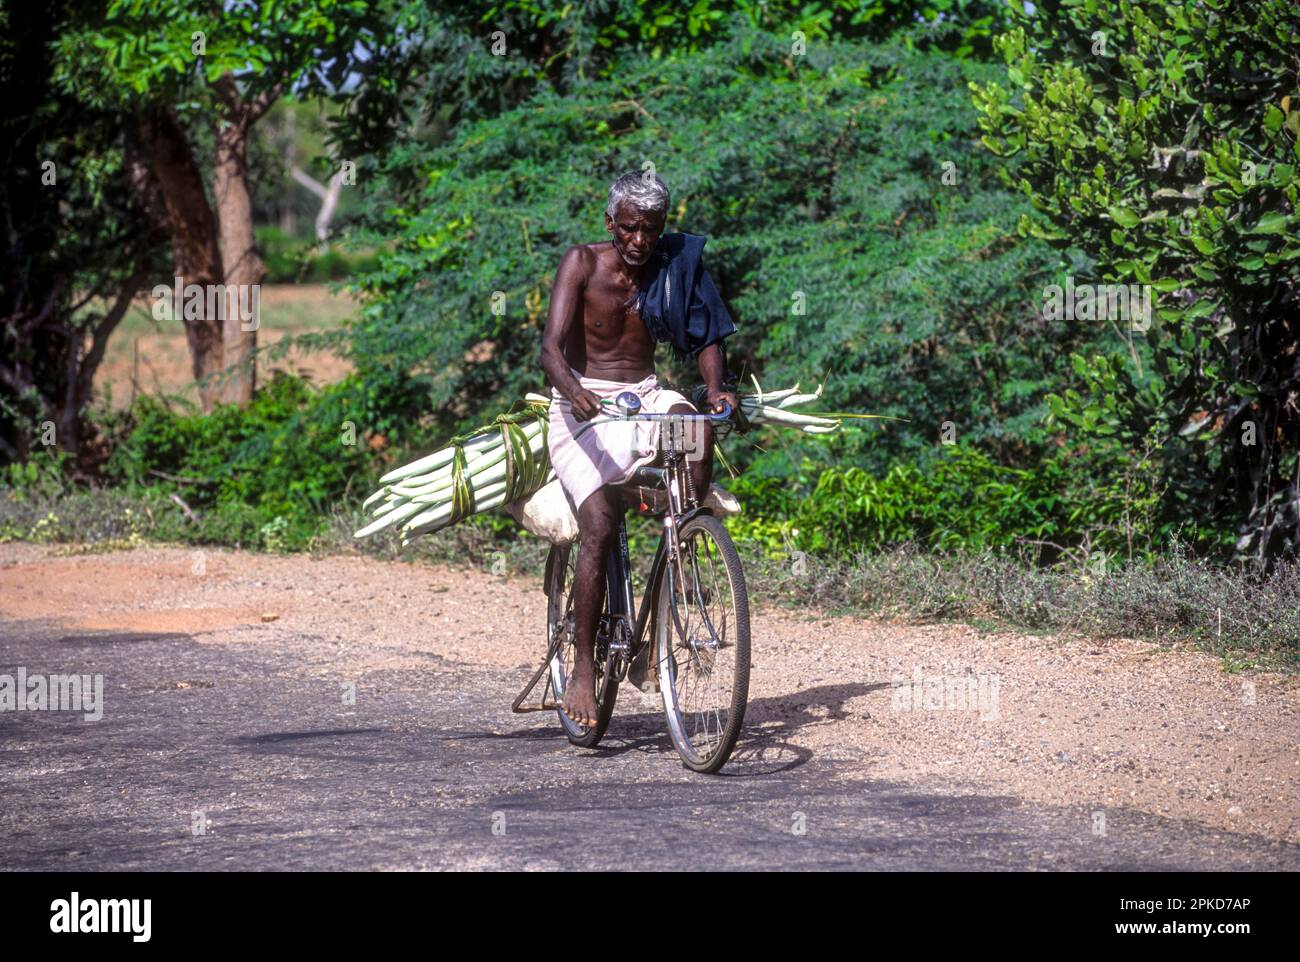 Un vieil homme portant un gourde de serpent végétal (Trichostanthes cucucumerina) à vélo, Tamil Nadu, Inde du Sud, Inde, Asie Banque D'Images